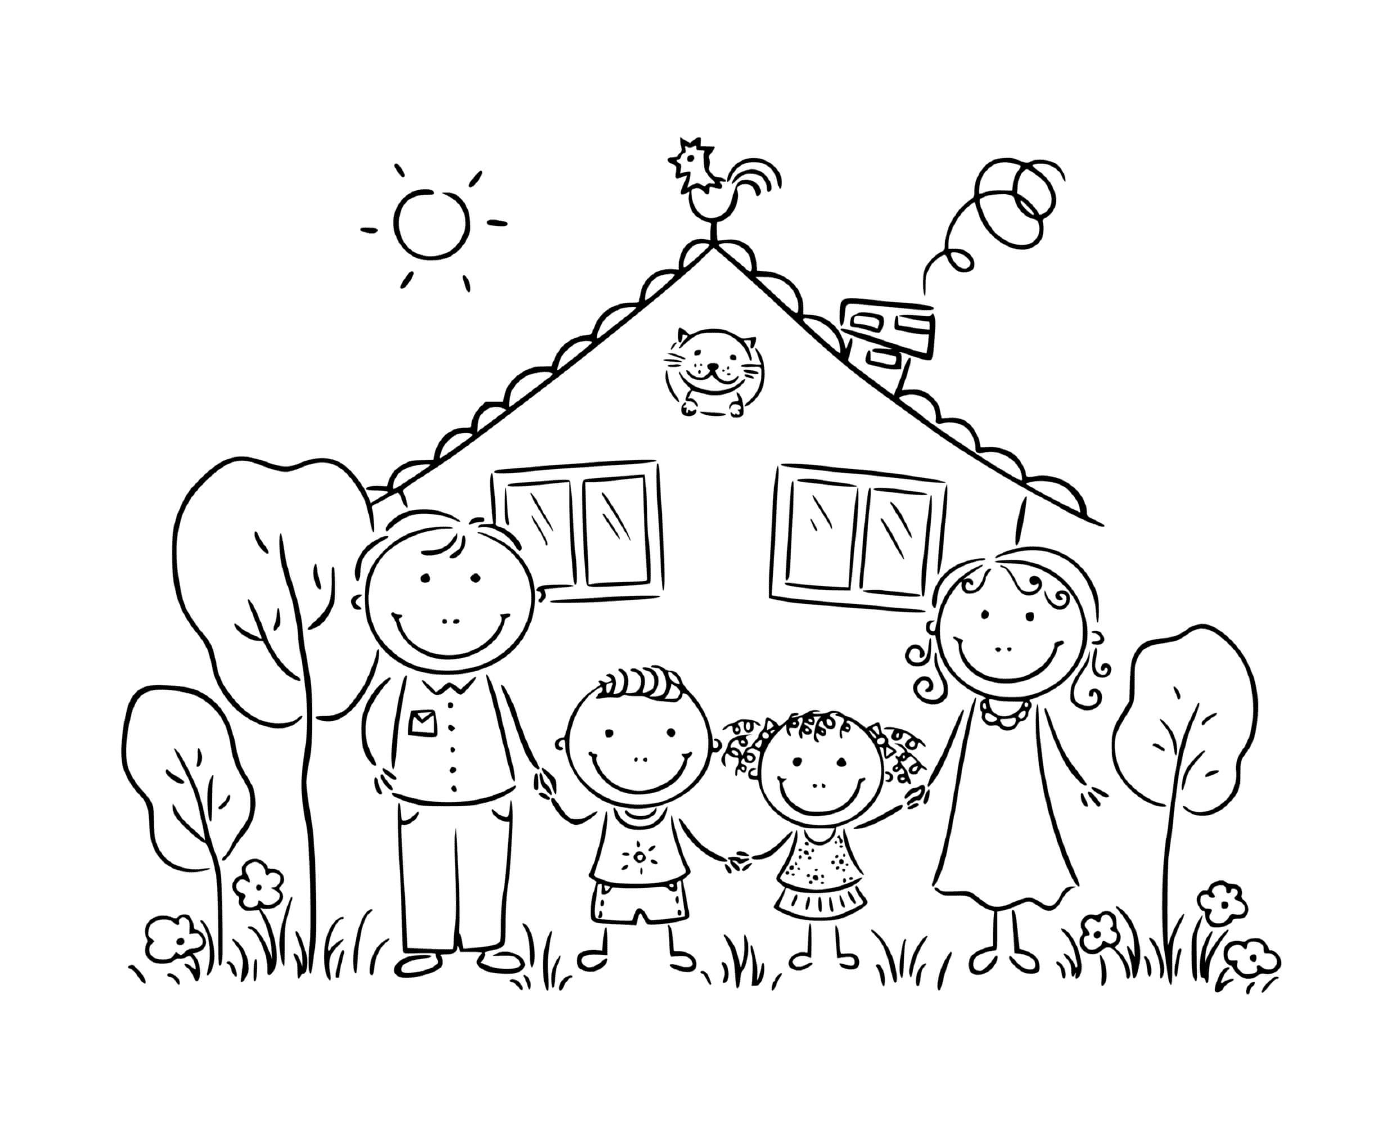  عائلة مع قطة أمام منزلها 